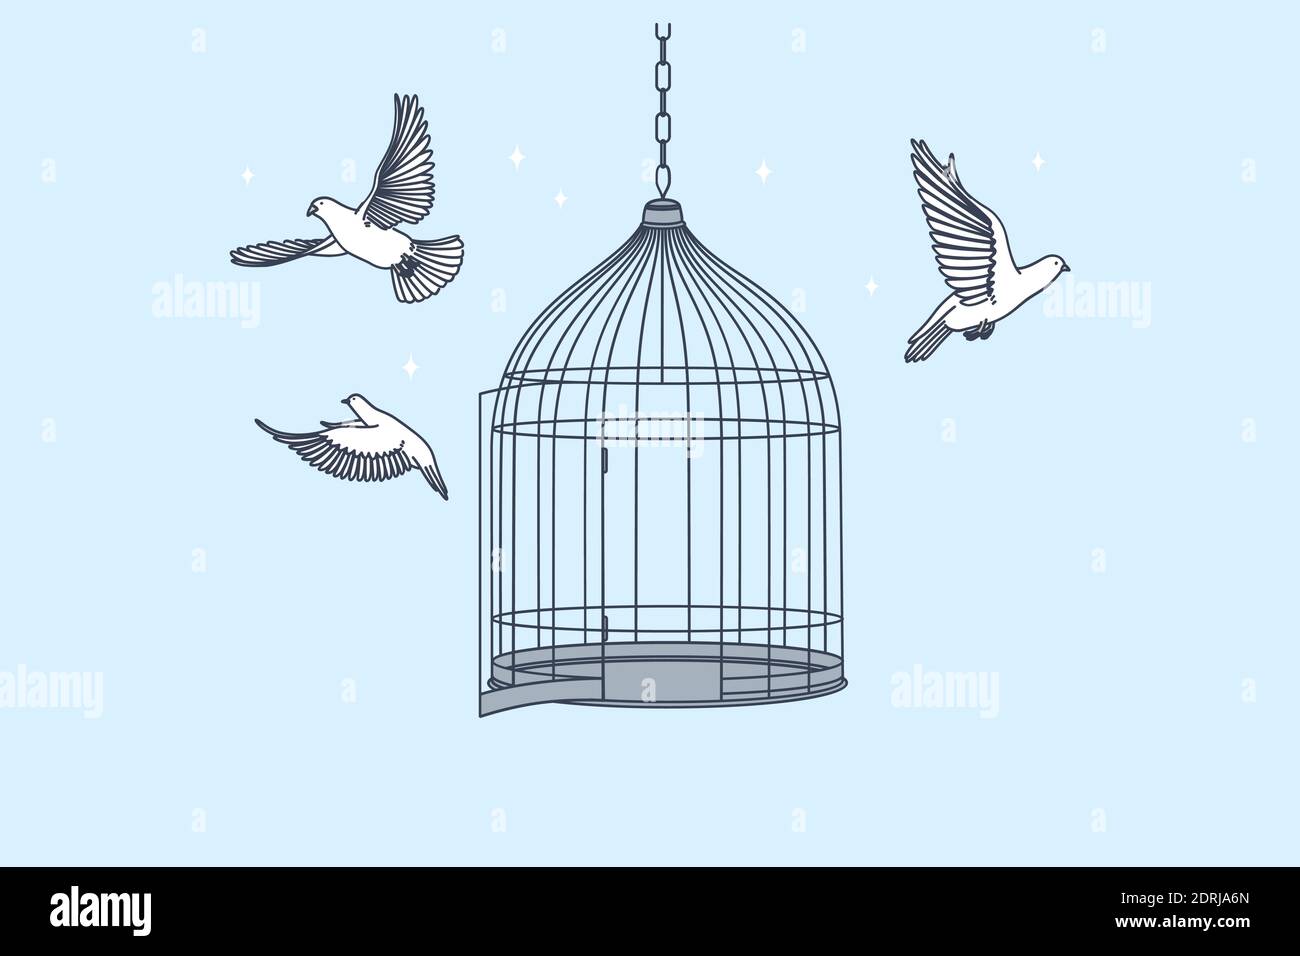 Neue Möglichkeiten, Freiheit, Konzept der geistigen Entwicklung. Offener Käfig mit Fliegen von innen Tauben Vögel bedeutet immer Freiheit von Geist und Körper illustrr Stock Vektor